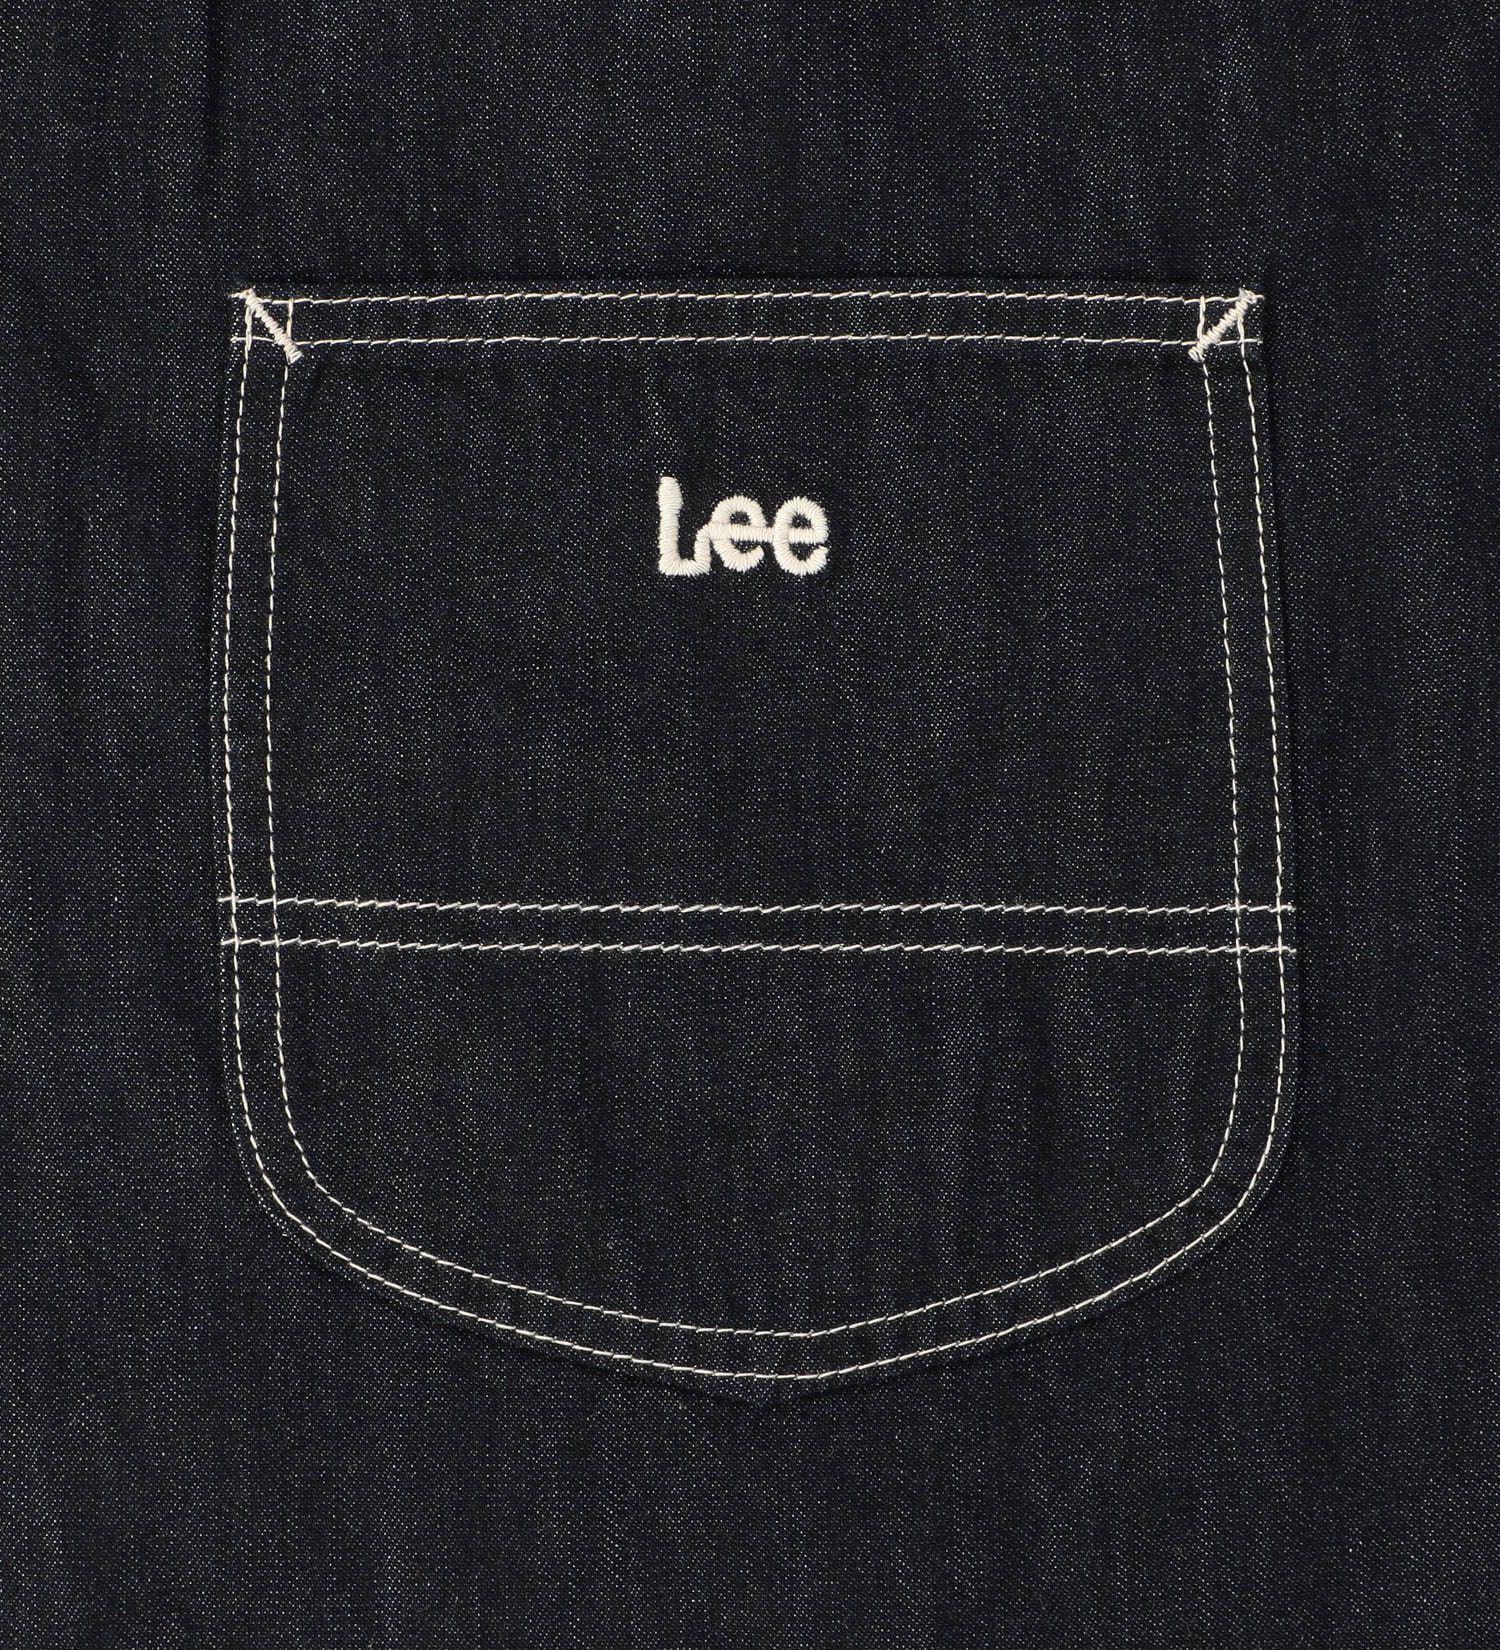 Lee(リー)の巾着バッグ MEDIUM|バッグ/その他バッグ/キッズ|インディゴブルー